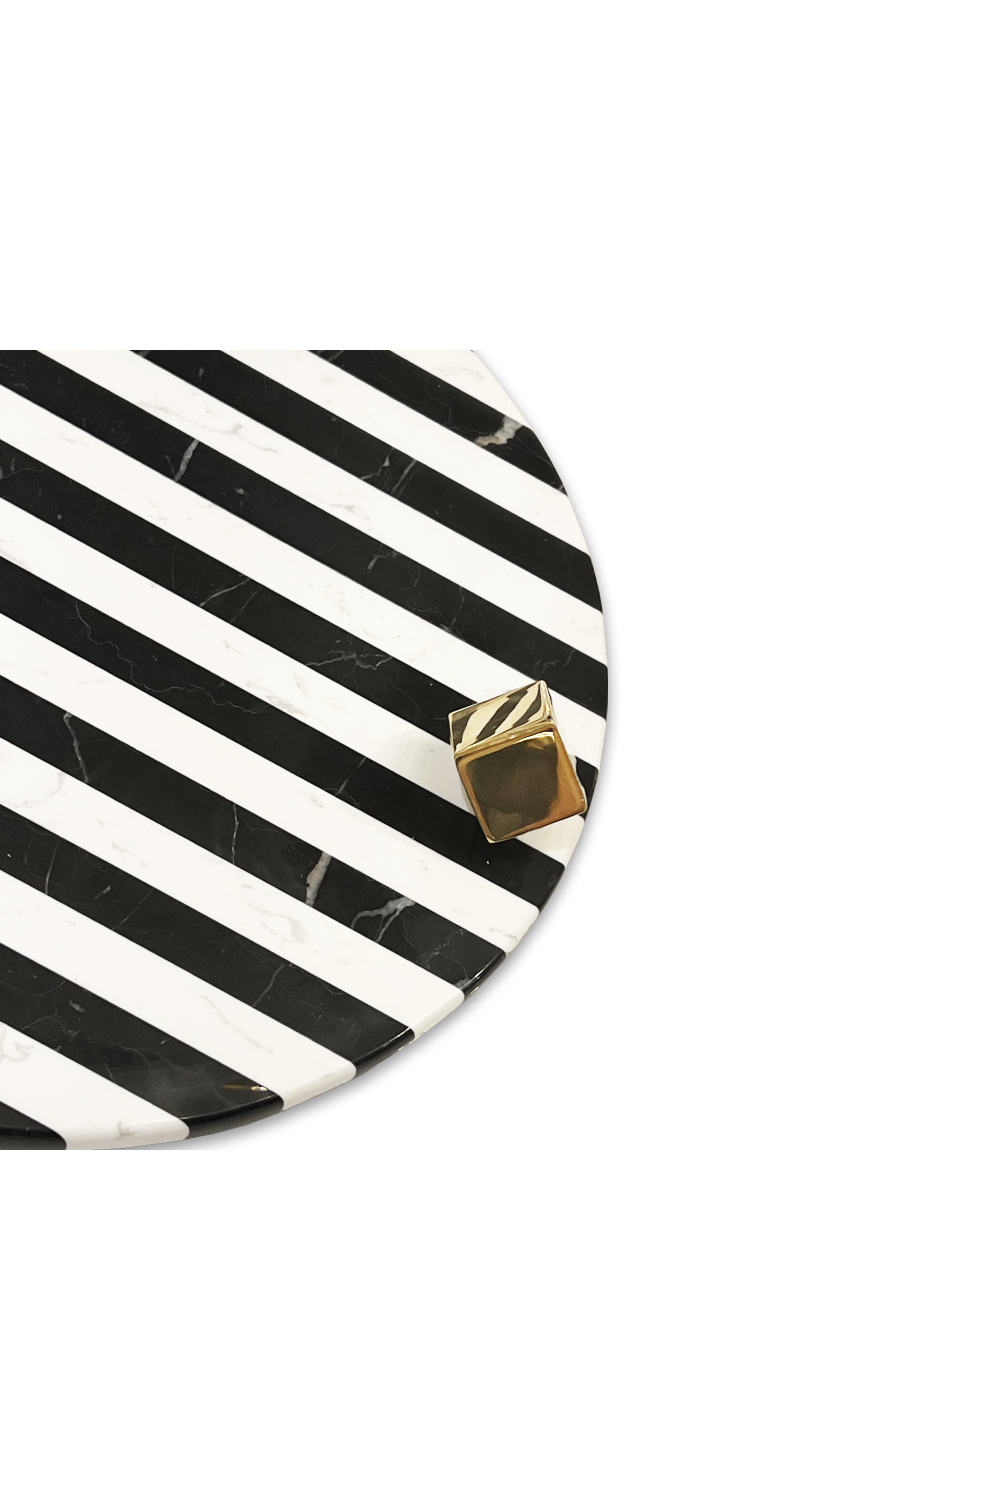 Stripe Round Marble Tray | Liang & Eimil Chalton | Oroa.com